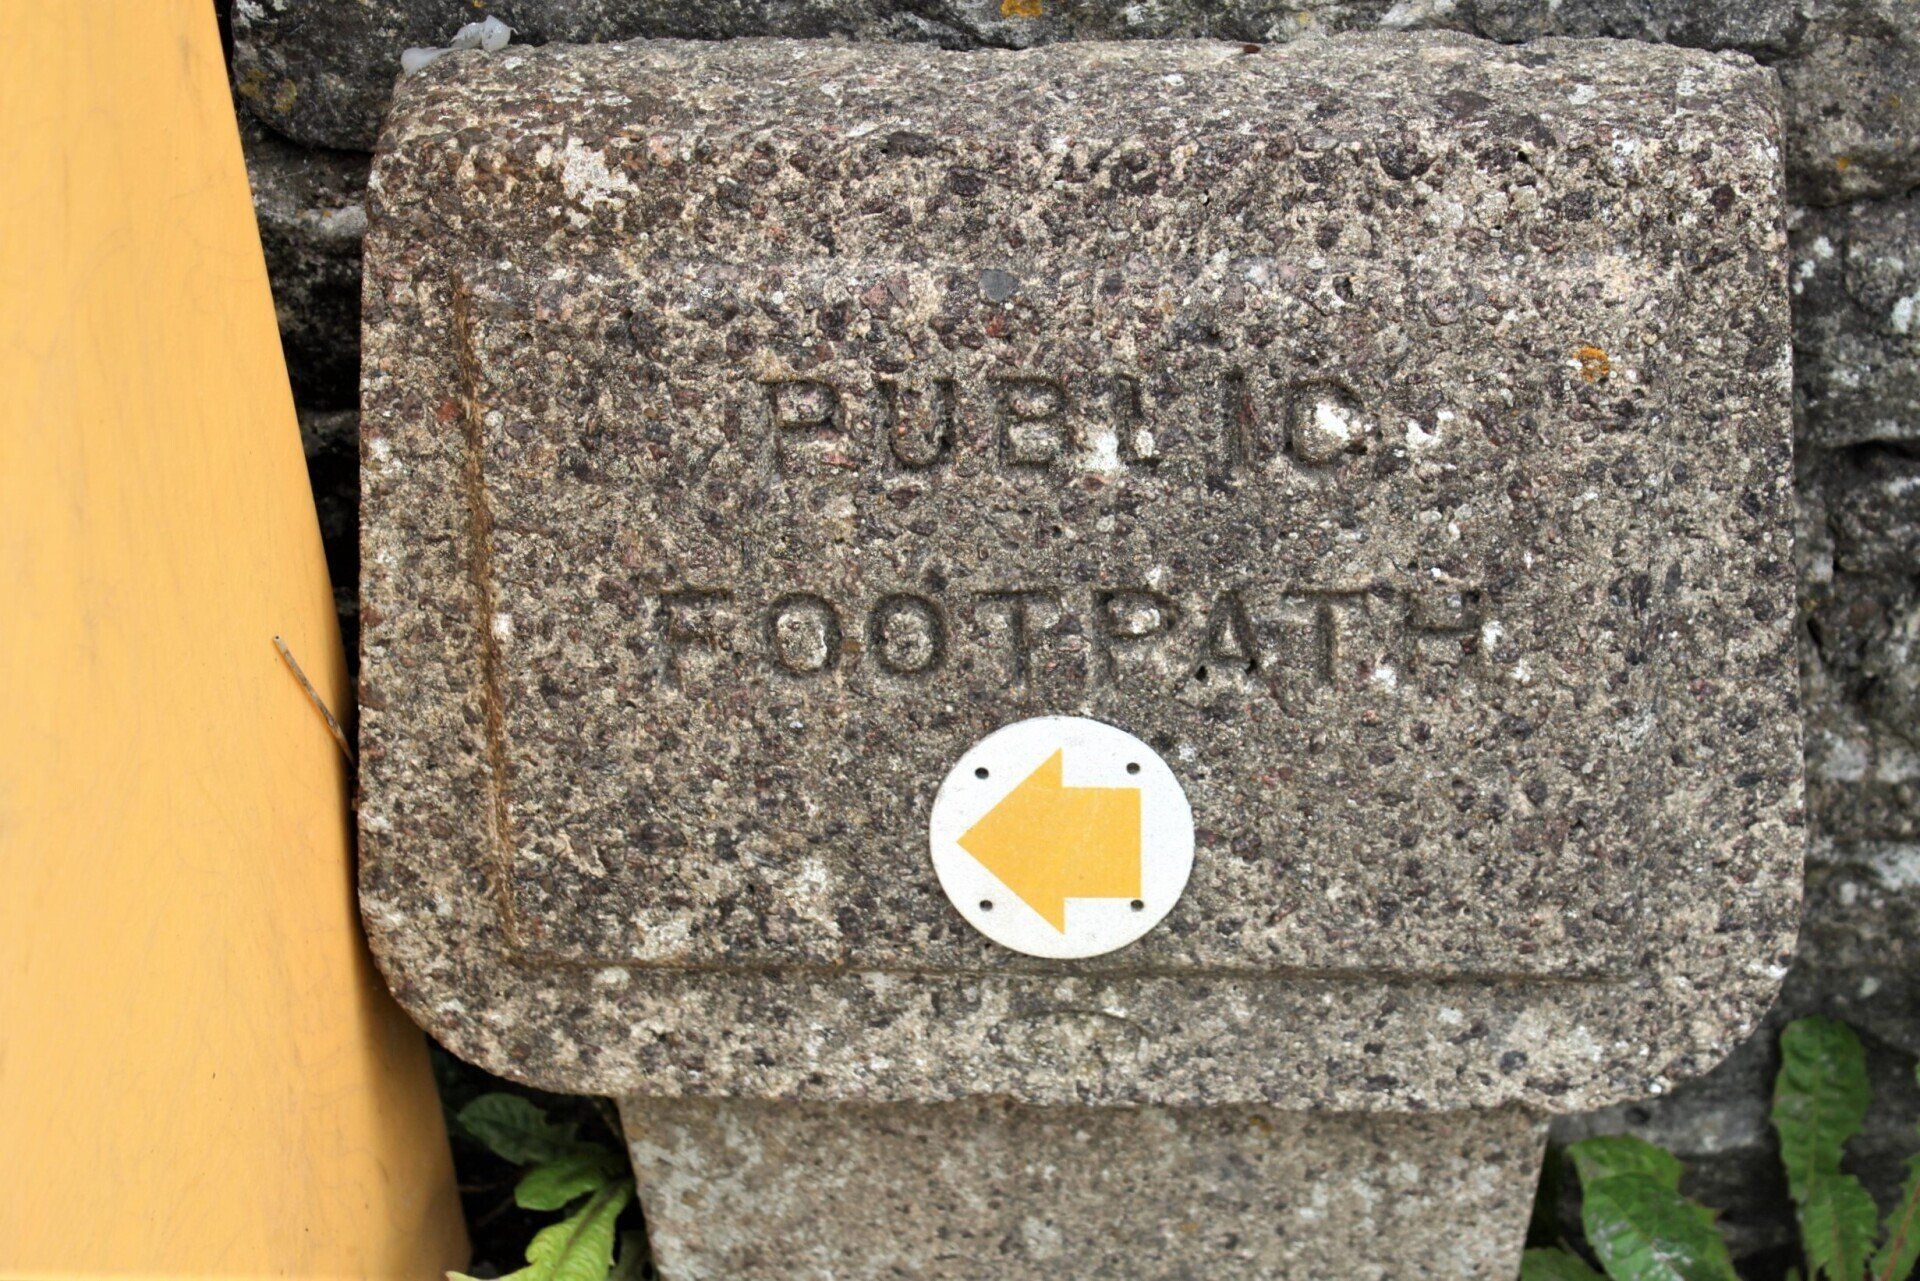 Public footpath